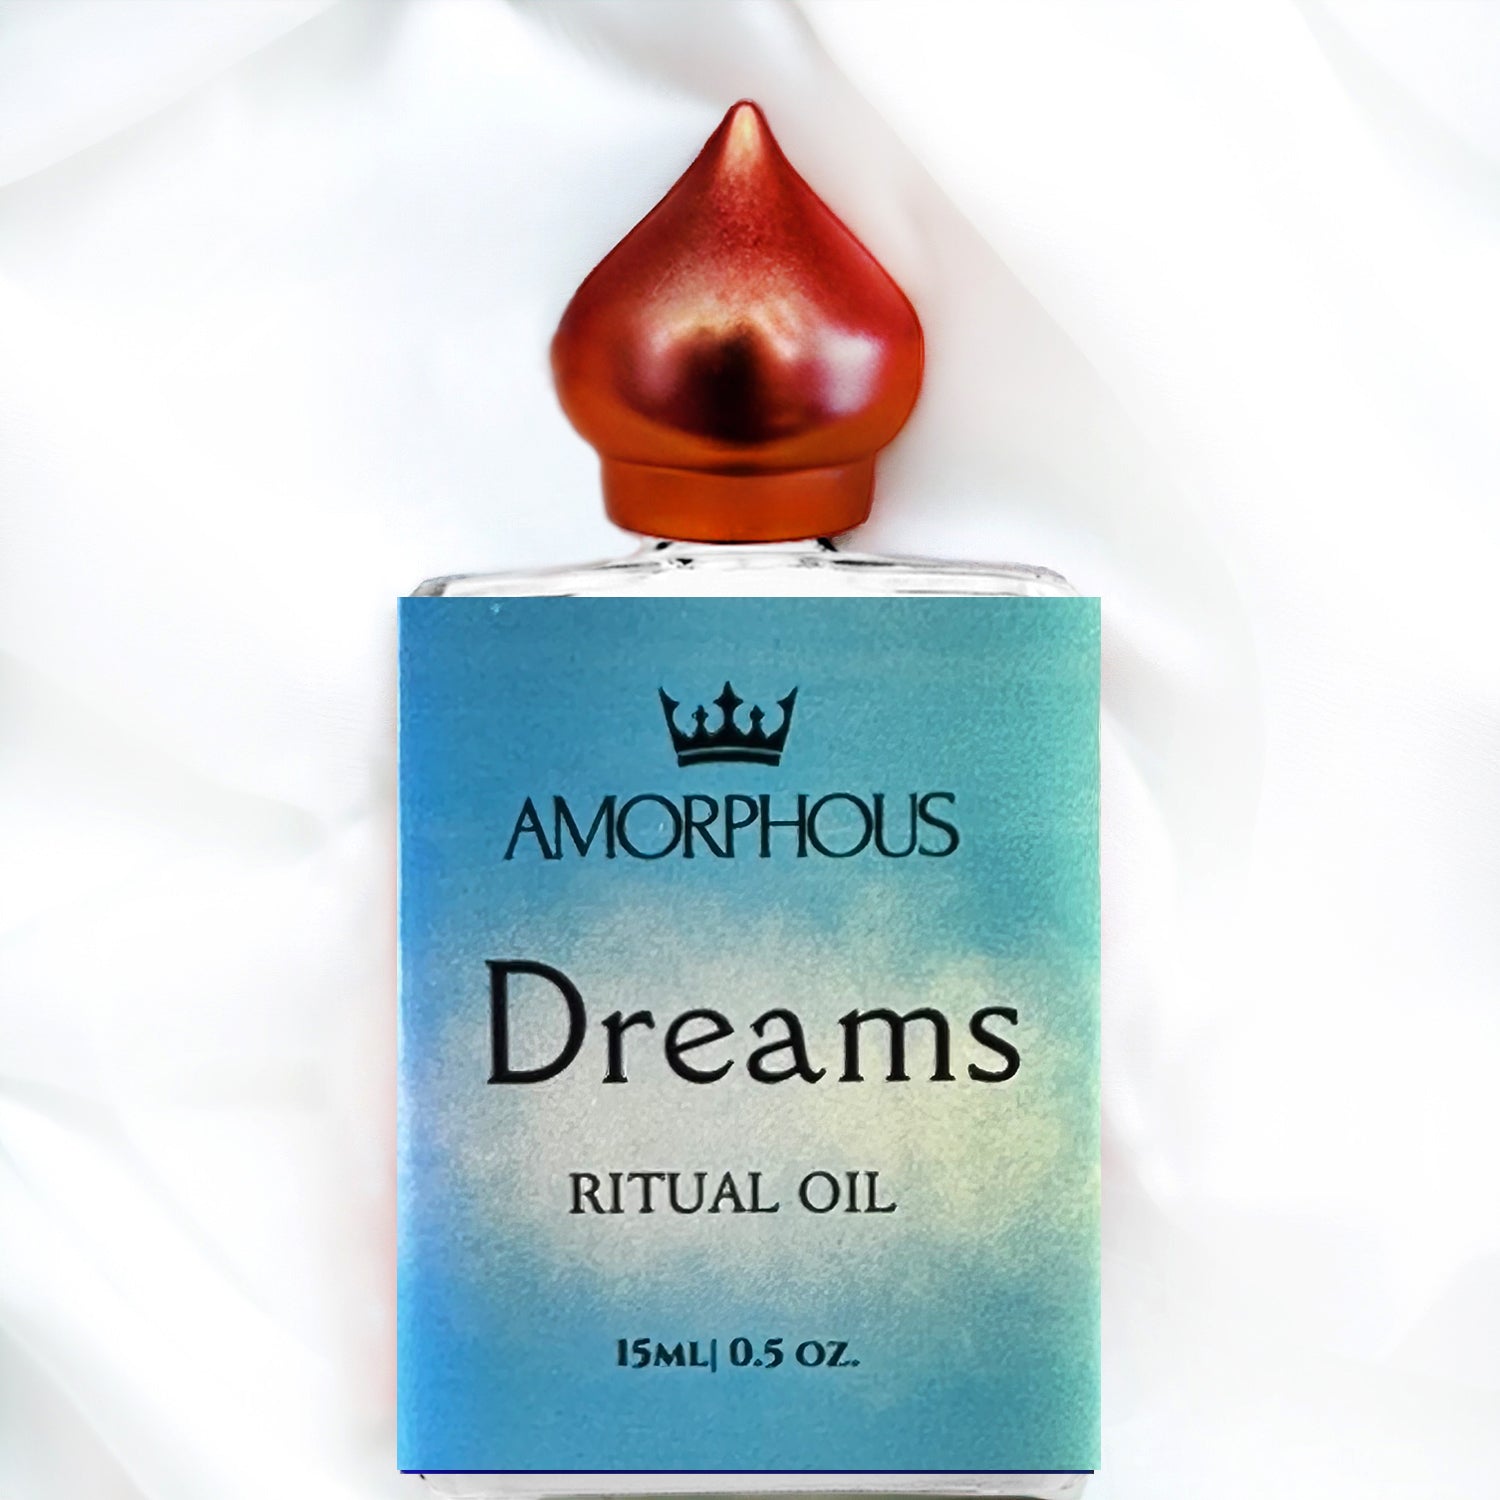 Dreams oil